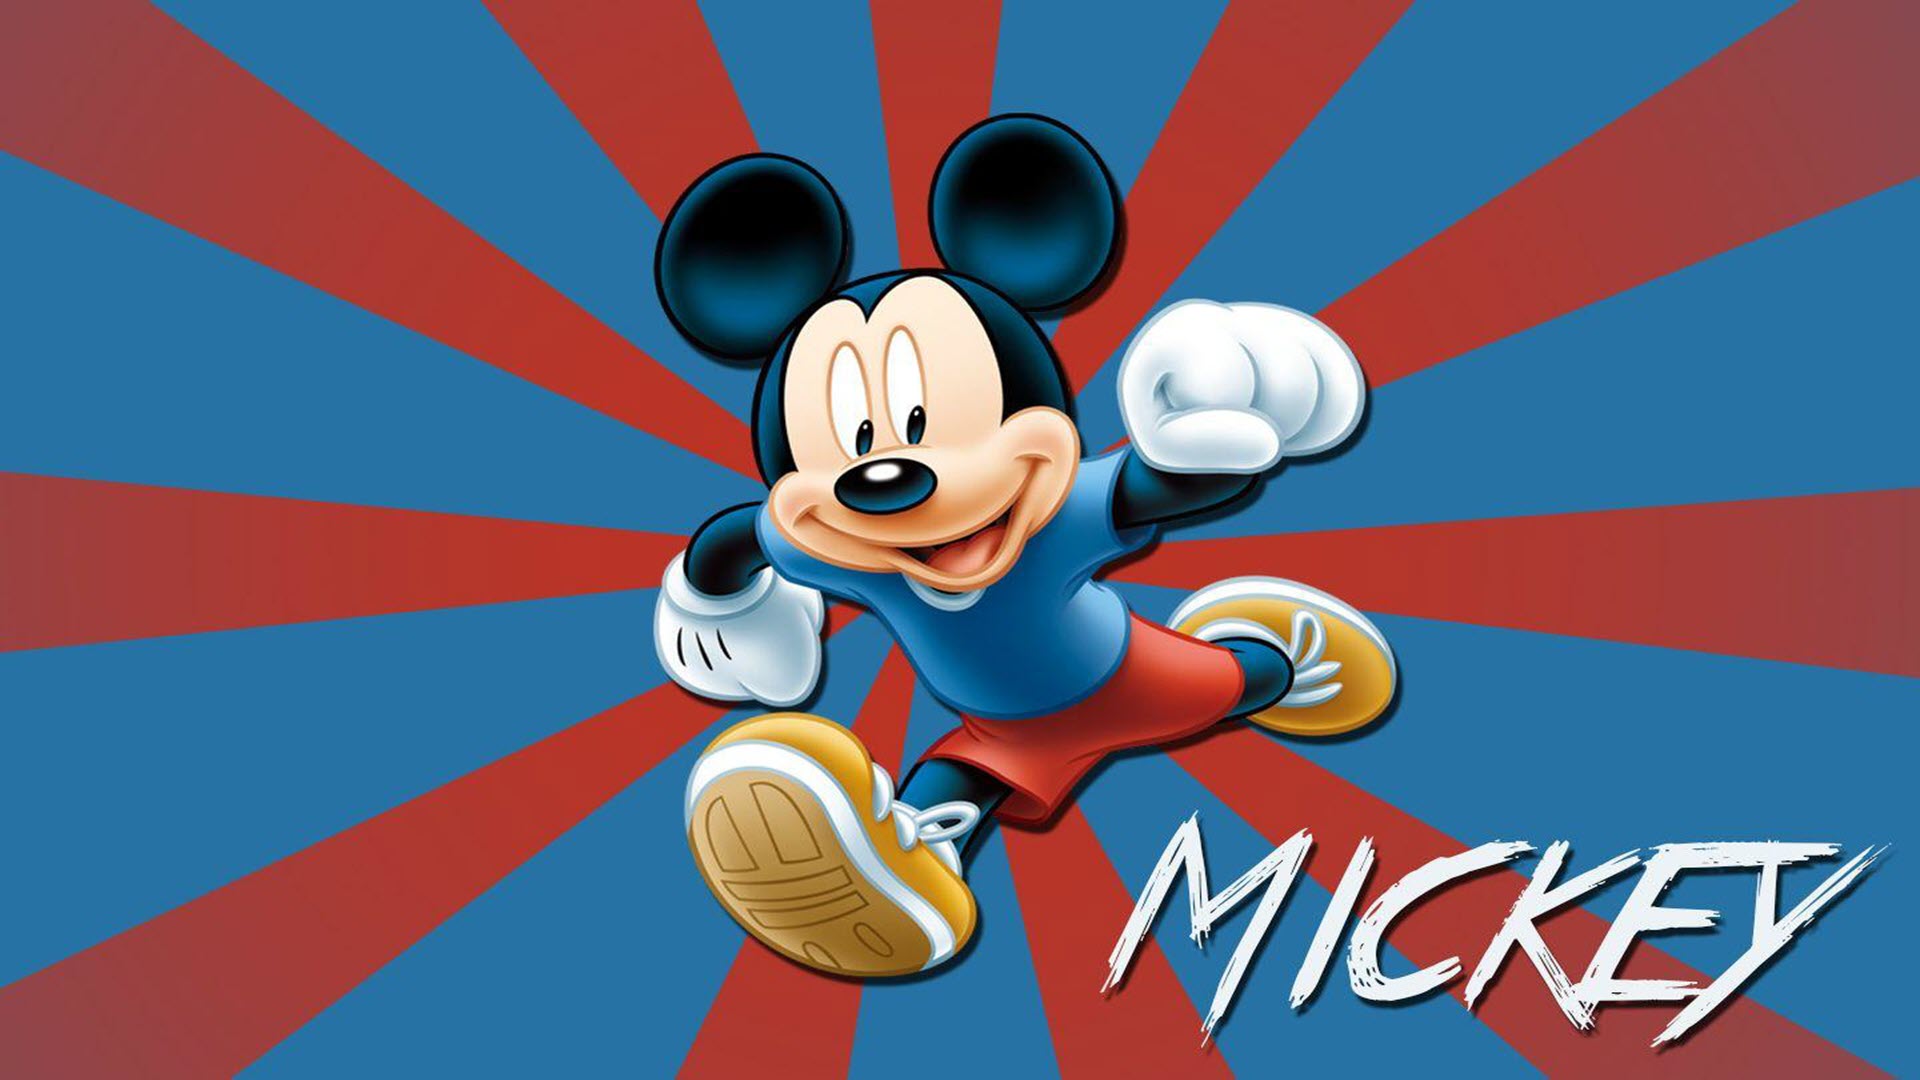 Bạn là fan Mickey Mouse và đang muốn tìm kiếm hình nền đẹp để làm mới màn hình điện thoại? Hãy cùng khám phá bộ sưu tập hình nền Mickey cực đẹp của chúng tôi. Những hình ảnh sáng tạo và đầy màu sắc sẽ đưa bạn vào một thế giới giải trí đầy thú vị và năng động.